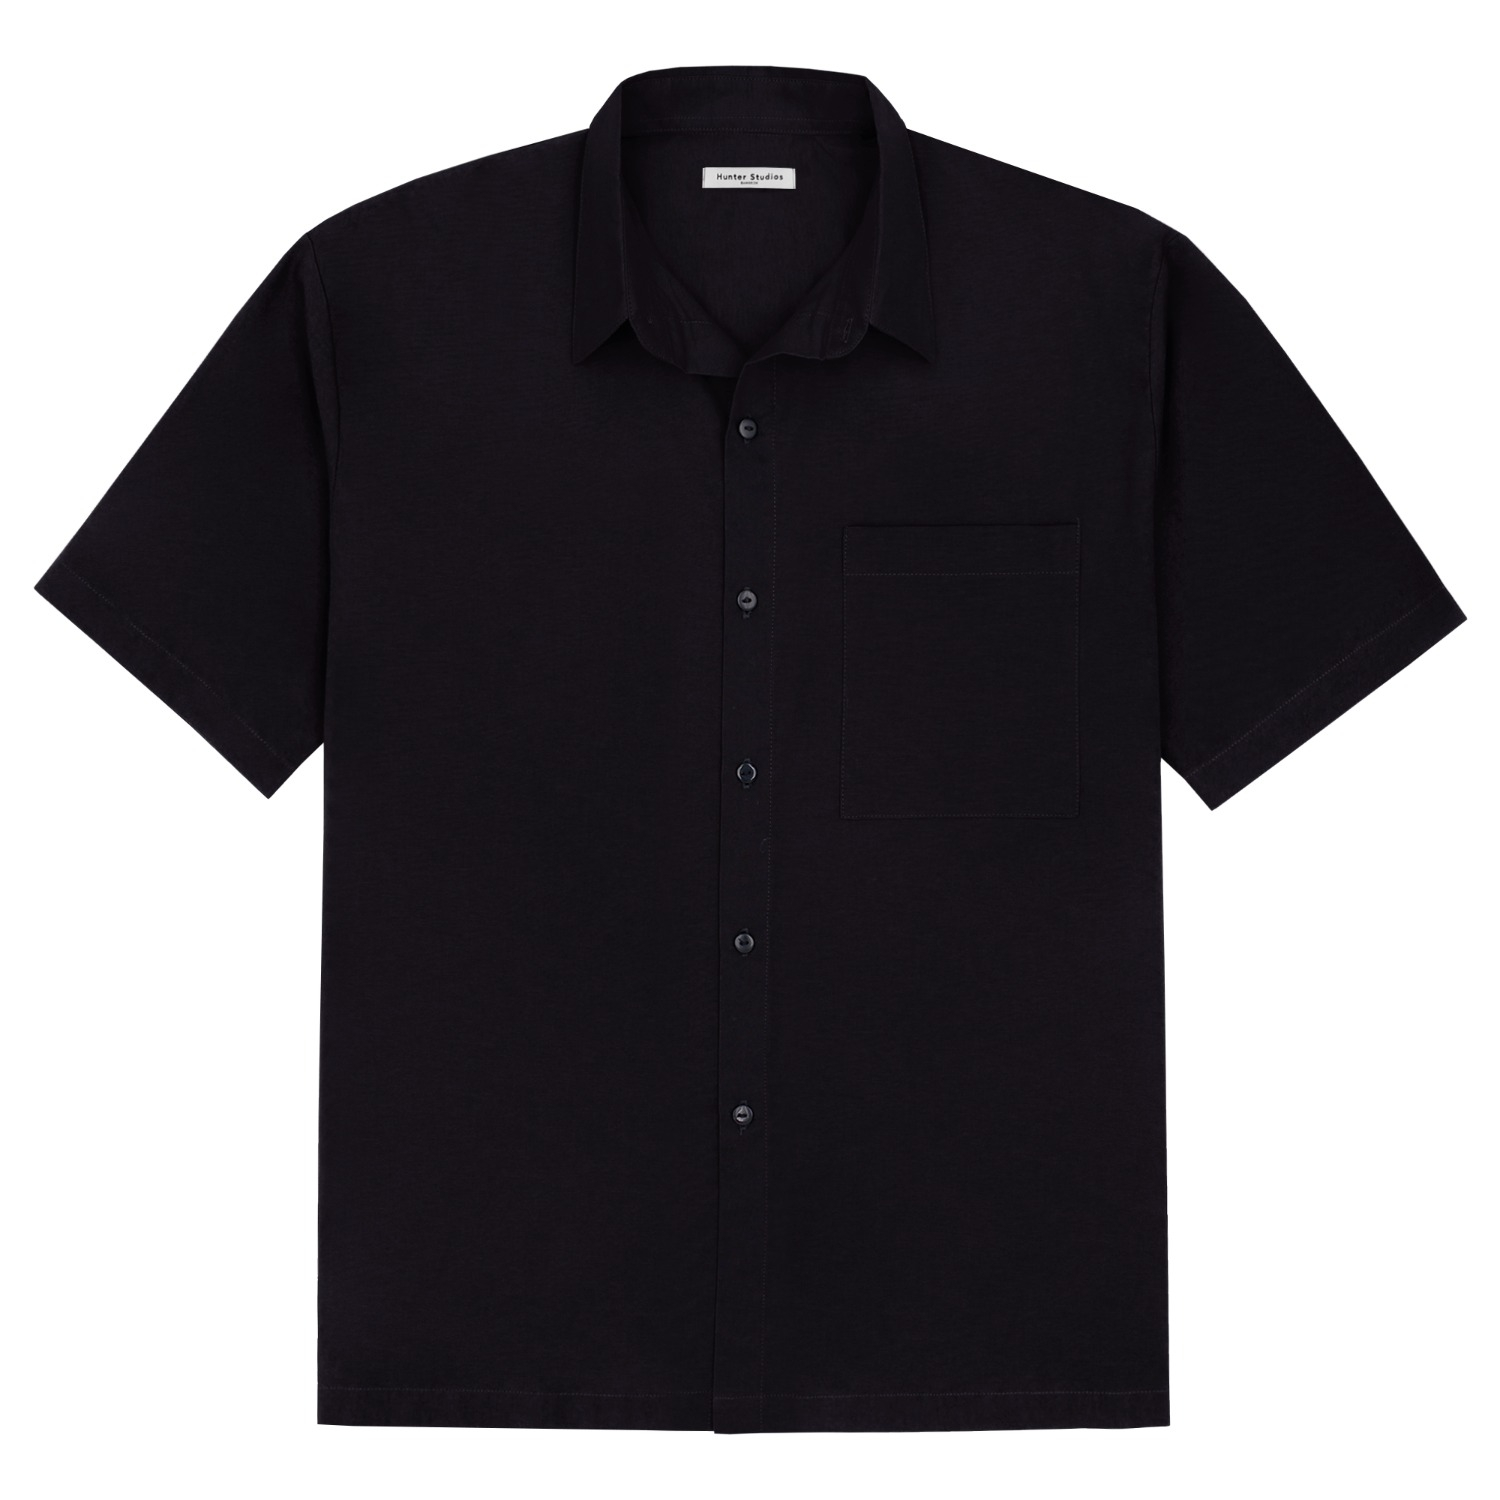 Fainly Shirt (Black)